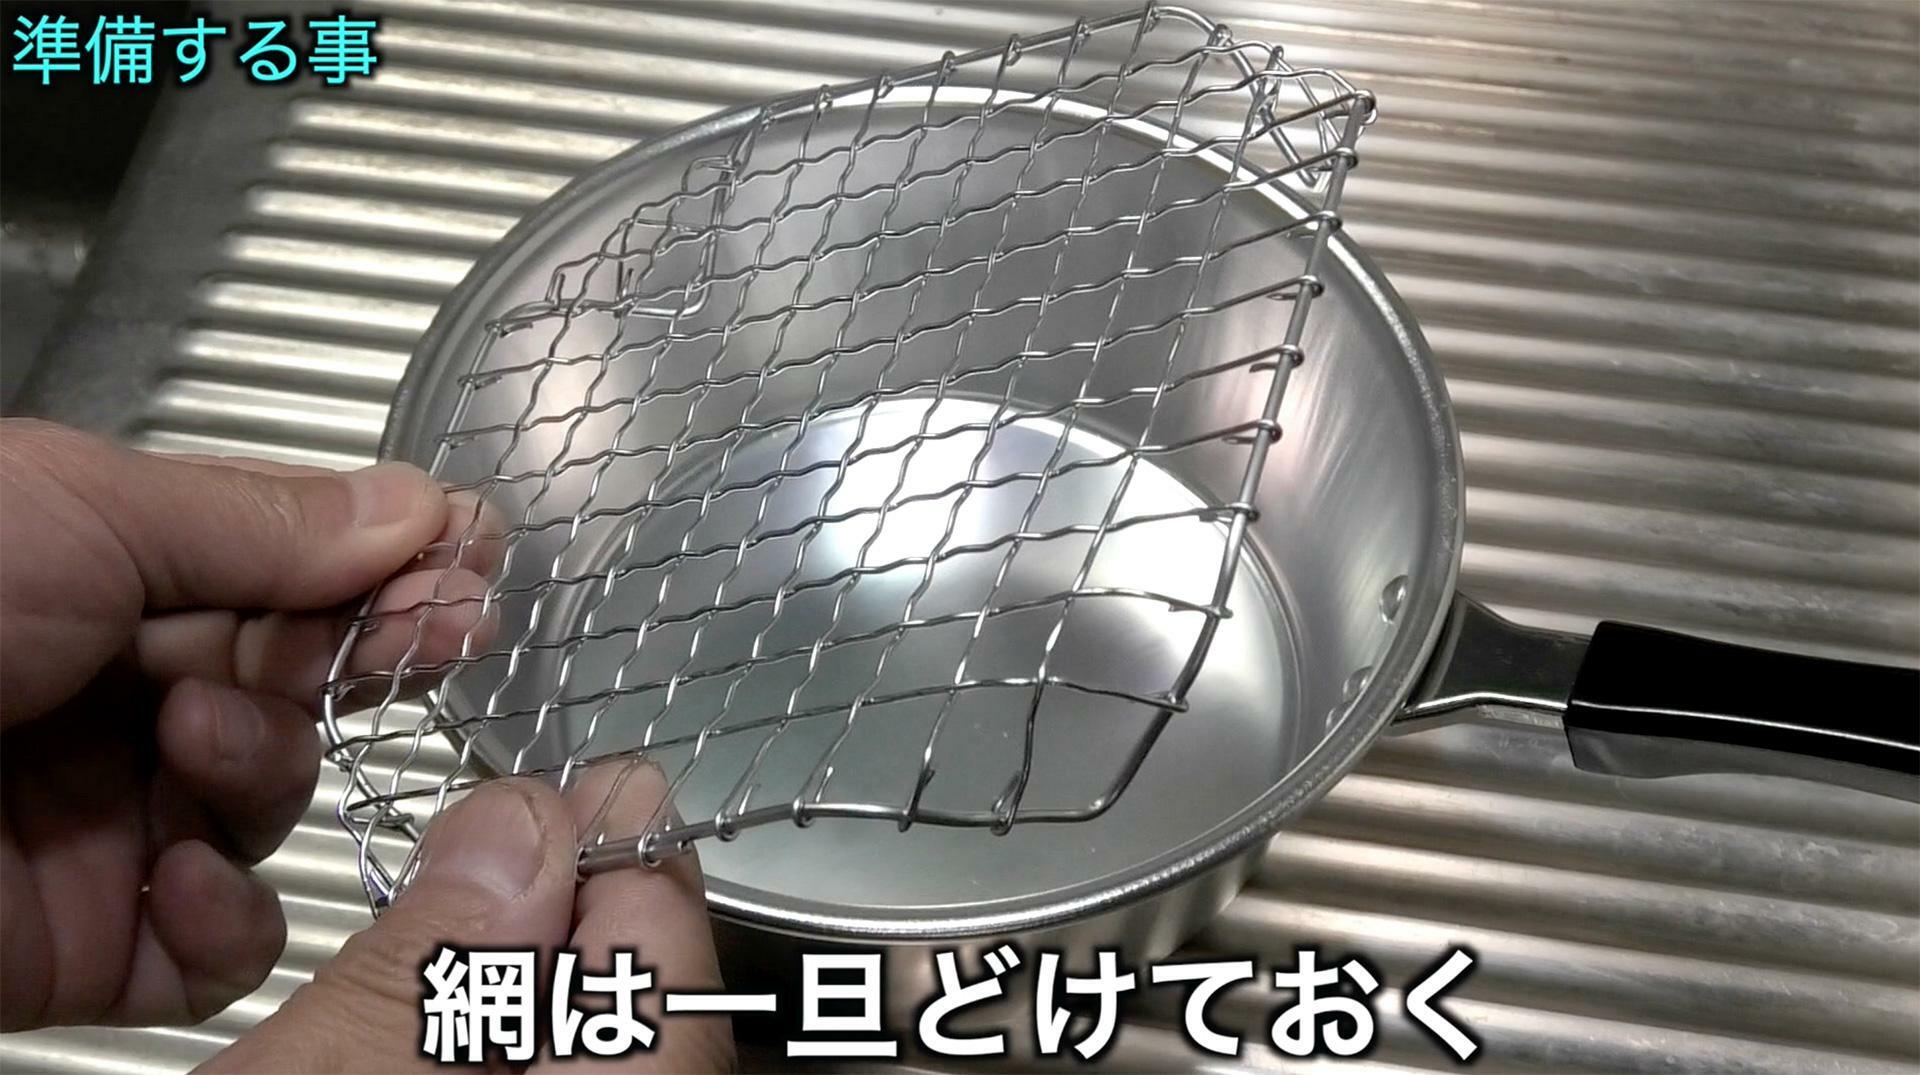 今回使った焼き網は正方形の物が2枚入って100円の商品